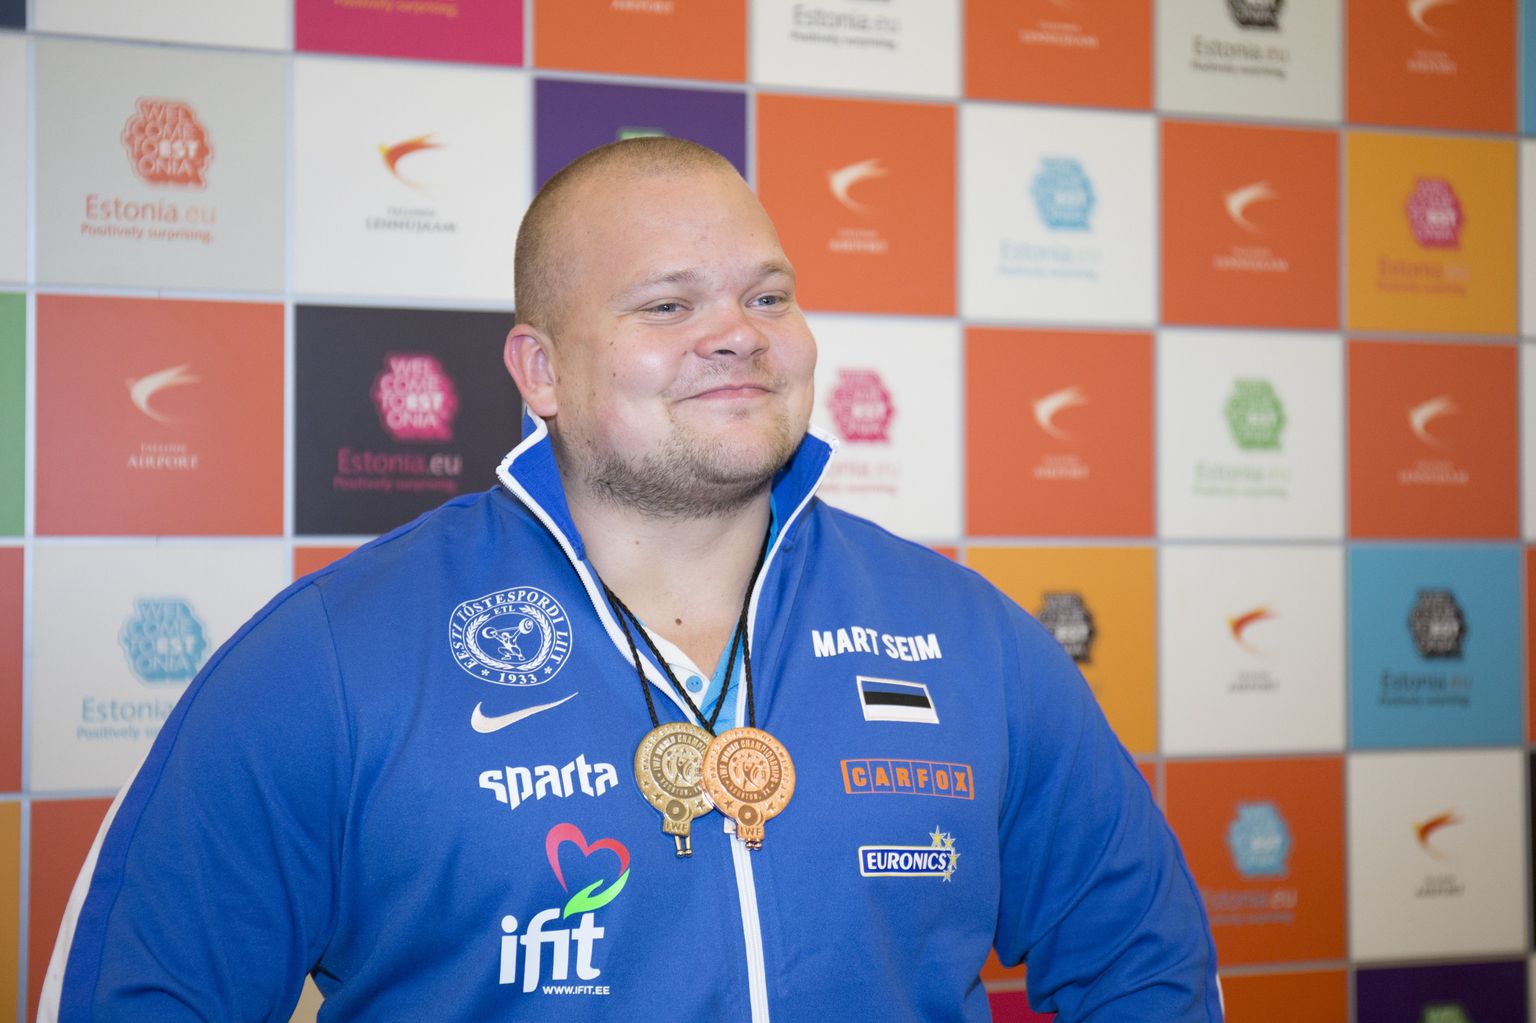 Rõõmsameelne medalimees Mart Seim sai eile Tallinna lennujaamas demonstreerida MMil võidetud üliraskekaalu pronksmedalit ja tõukamises võidetud nö väikest hõbemedalit.